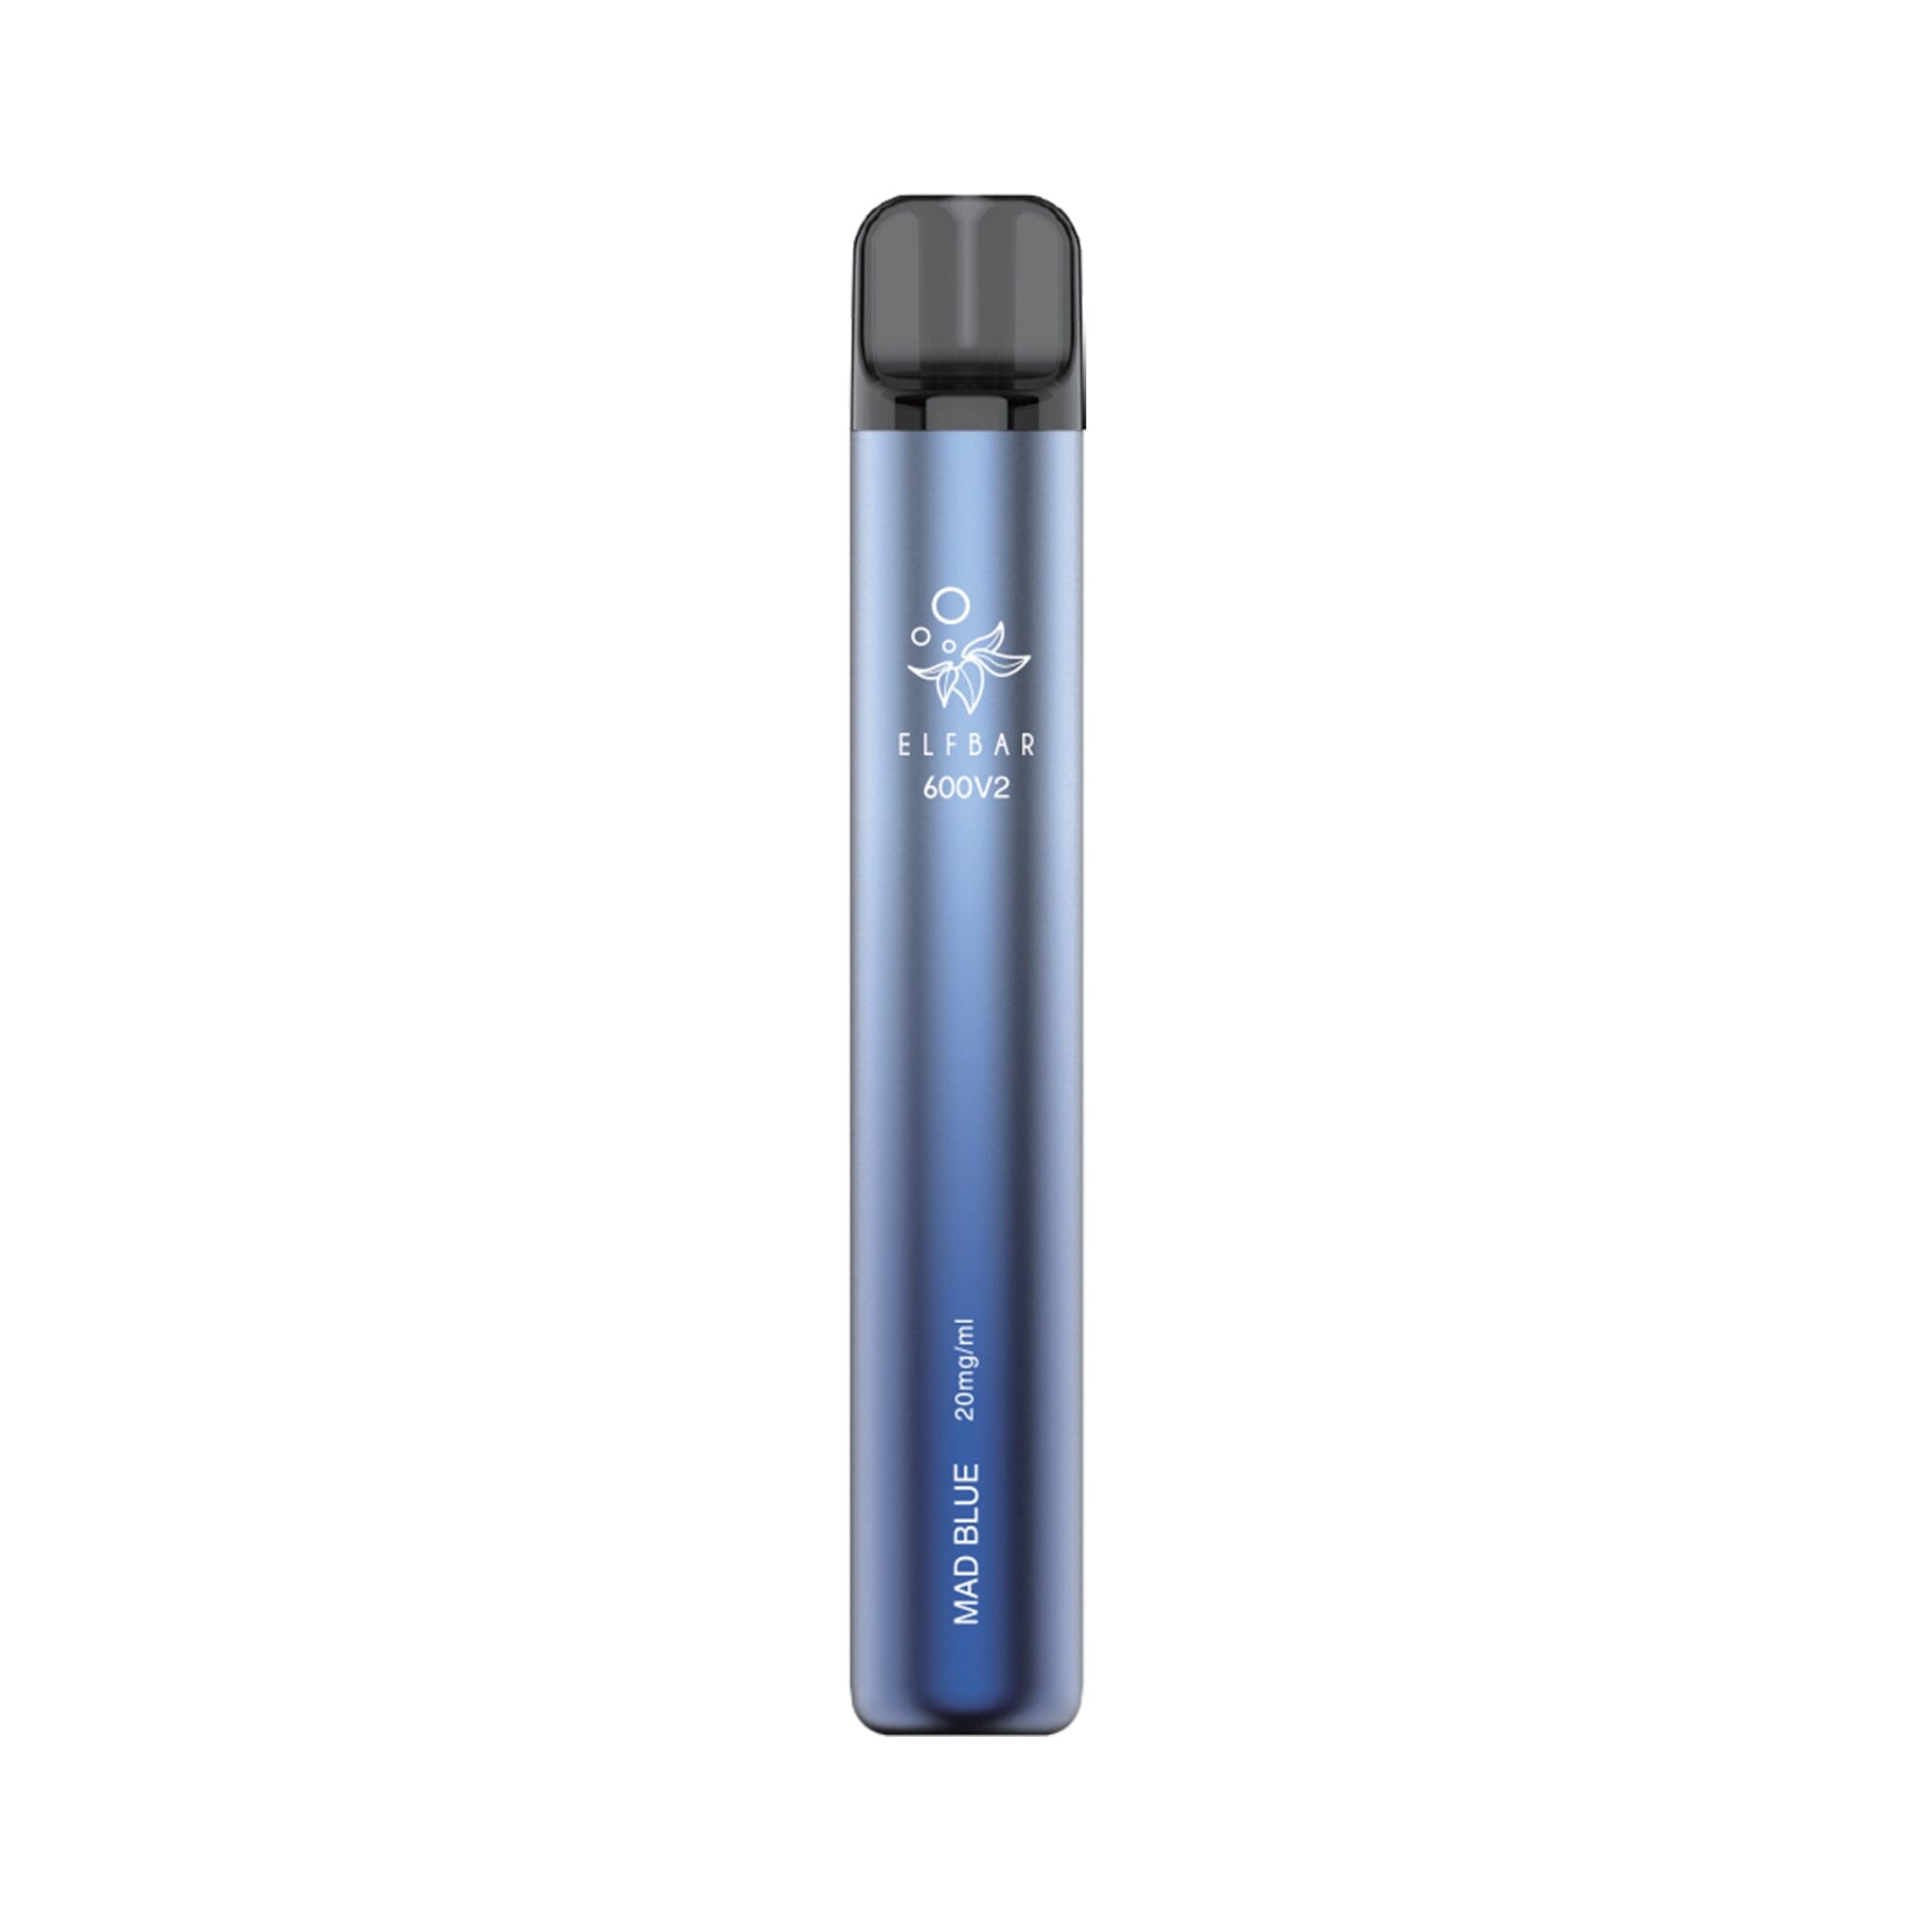 ELF BAR 600 V2 Disposable Vape Mad Blue 